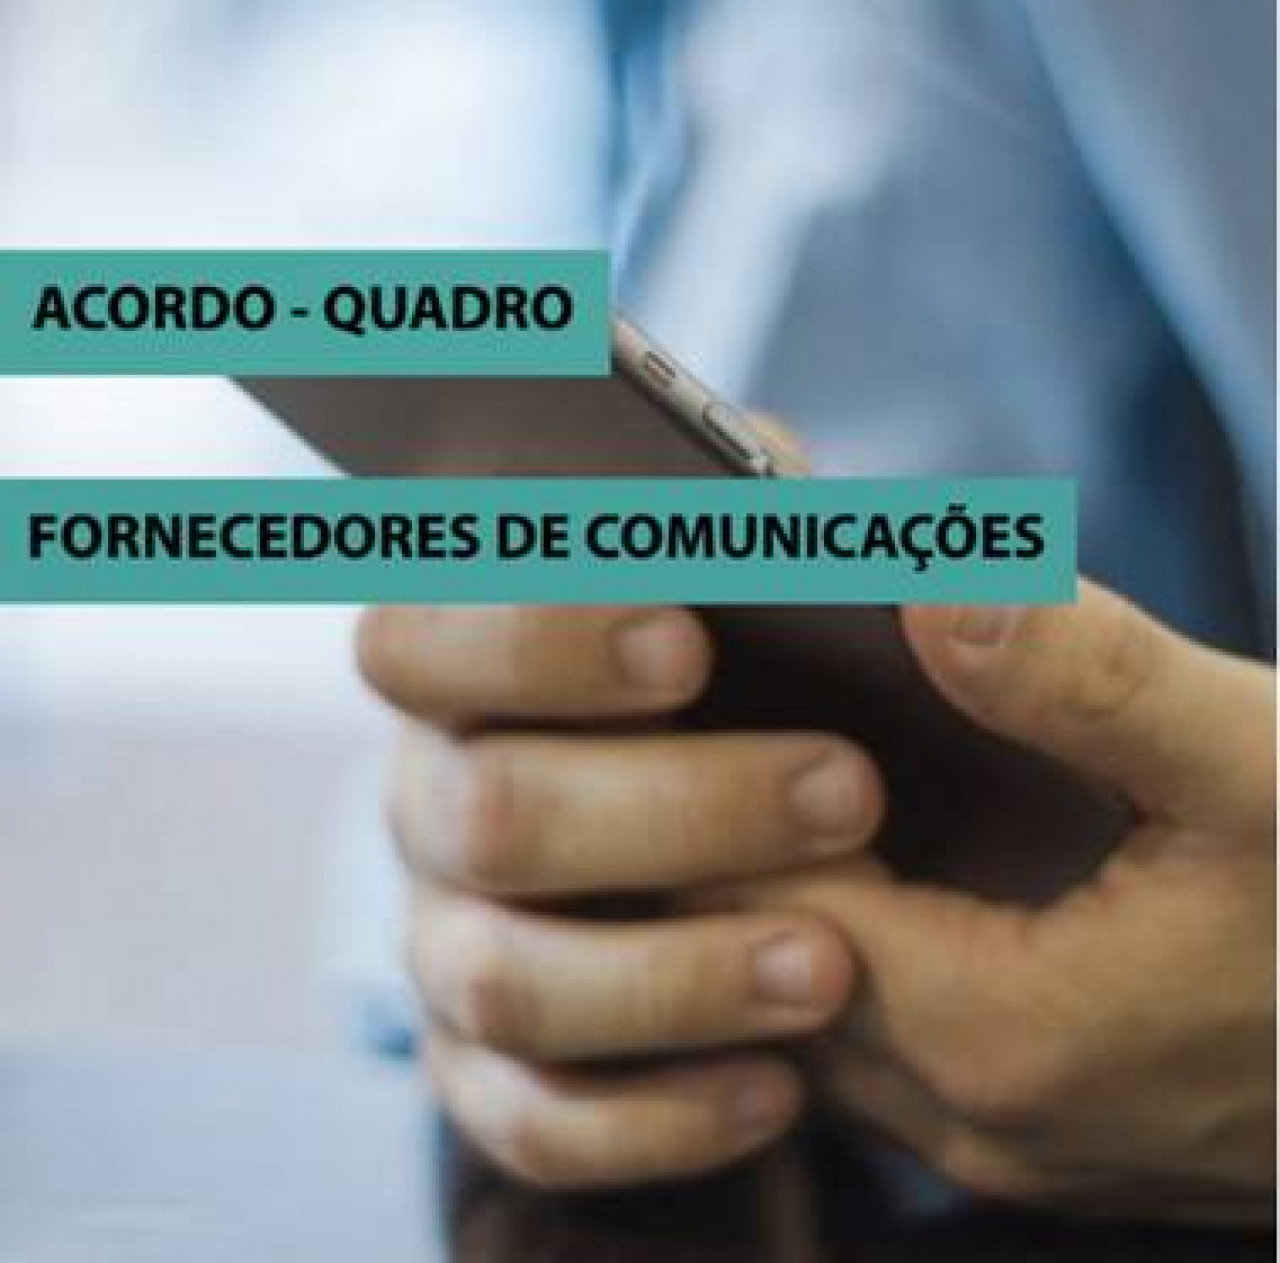 Central de Compras da CIMBAL lança Concurso Público Internacional para celebração de Acordo-Quadro para seleção de fornecedores de comunicações